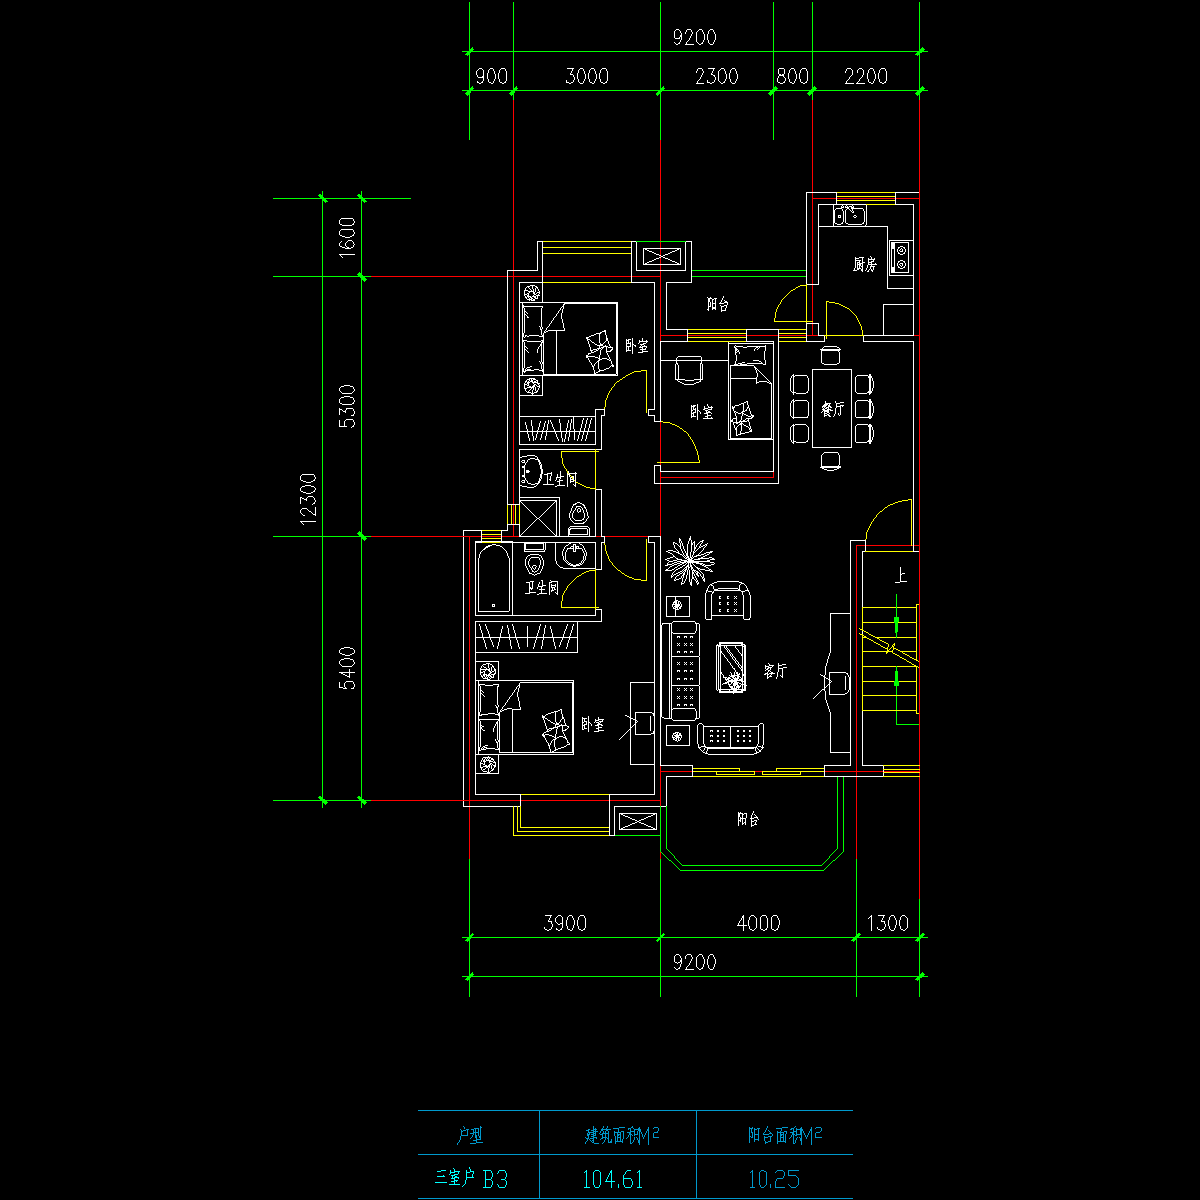 板式高层三室一厅单户户型CAD图纸(104.6)